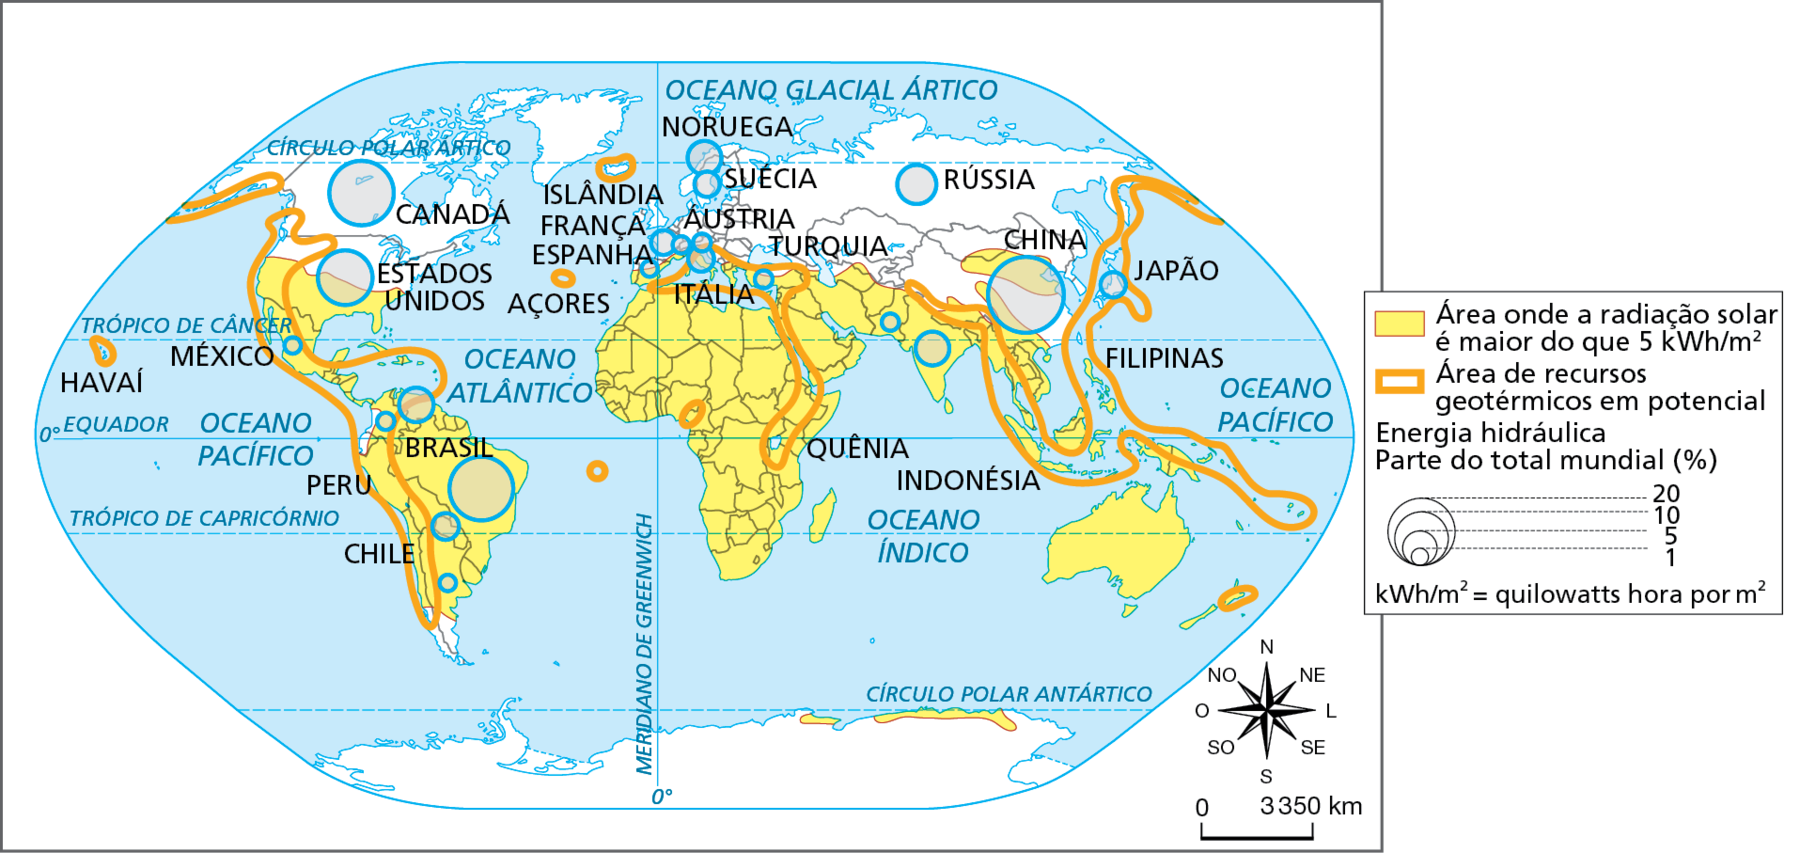 Mapa. Mundo: áreas com potencial ou uso de algumas fontes de energia renovável, 2018. Planisfério representando as áreas do planeta onde a radiação solar é maior do que 5 quilowatts hora por metro quadrado, as áreas com recursos geotérmicos em potencial e a participação de alguns países na produção mundial de energia hidráulica (em porcentagem).
Área onde a radiação solar é maior do que 5 quilowatts hora por metro quadrado: do centro-sul dos Estados Unidos ao centro-sul de Argentina e Chile, todo o continente africano, todo o Oriente Médio, o sul da Europa, sul e sudeste asiático, Oceania, sul e norte da China e estreita faixa no norte da Antártida na porção banhada pelo Oceano Índico.
Área de recursos geotérmicos em potencial: porção que inclui o Japão, a Península da Indochina, as ilhas do Sudeste Asiático e Oceania, Nepal e Butão, o Mar Mediterrâneo incluindo a Itália, Mar Vermelho e faixa leste no interior da África, incluindo a porção central do Quênia, Islândia, ilhas dos Açores, oeste dos Camarões, norte da Nova Zelândia, porção oeste dos Estados Unidos e do Canadá, Havaí, América Central e porção oeste da América do Sul, incluindo Peru e Chile.
Energia hidráulica 
Parte do total mundial, em porcentagem: 
20%: China. 
10%: Brasil, Canadá, Estados Unidos.
5%: Rússia, Índia, Noruega, Suécia, Venezuela, Japão e Paraguai.
1%: México, Argentina, Colômbia, Paquistão, Áustria, Turquia, Espanha e Suíça. 
Na parte inferior, rosa dos ventos e escala de 0 a 3.350 quilômetros.